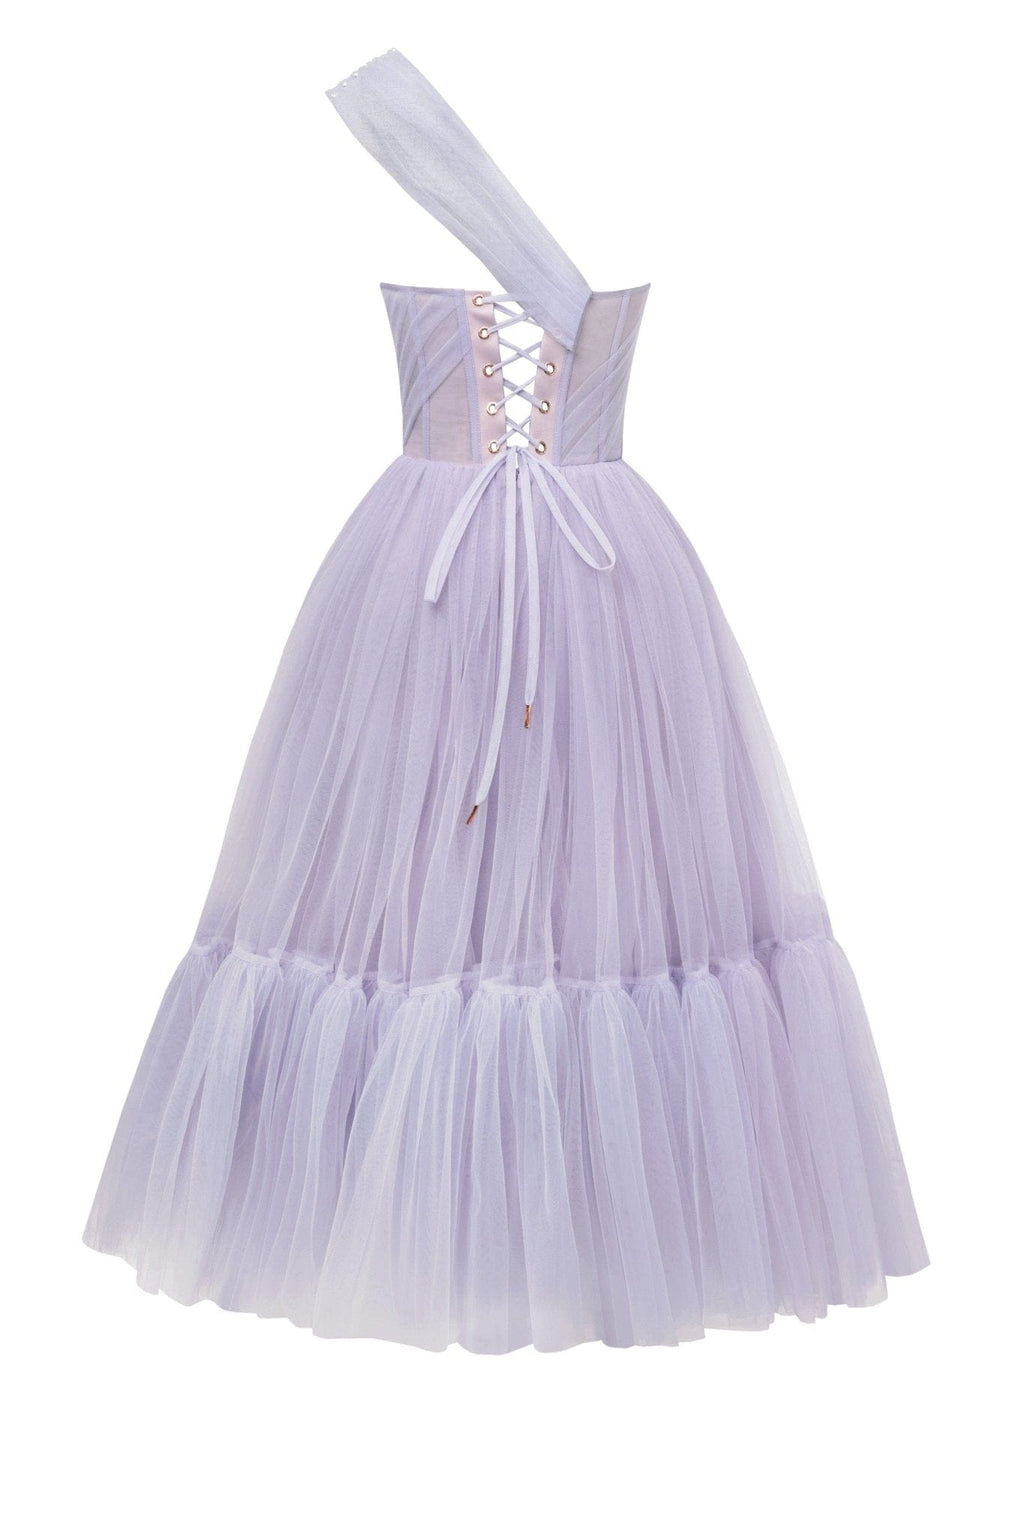 Lavender One-Shoulder Cocktail Tulle Dress Milla Dresses - USA ...